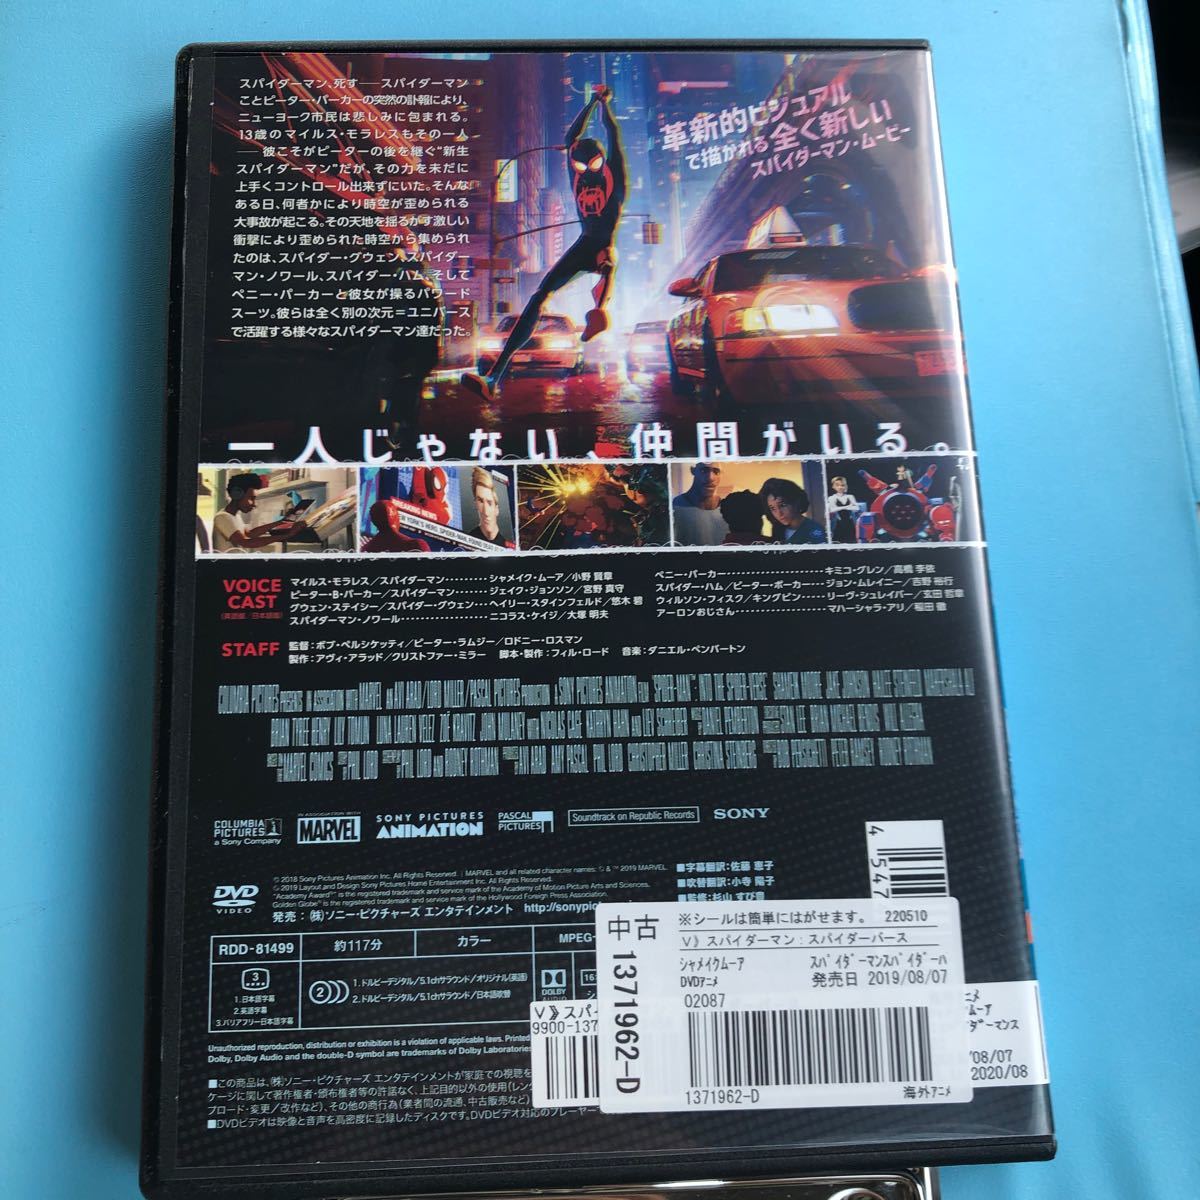 スパイダーマン:スパイダーバース  DVD('18米)